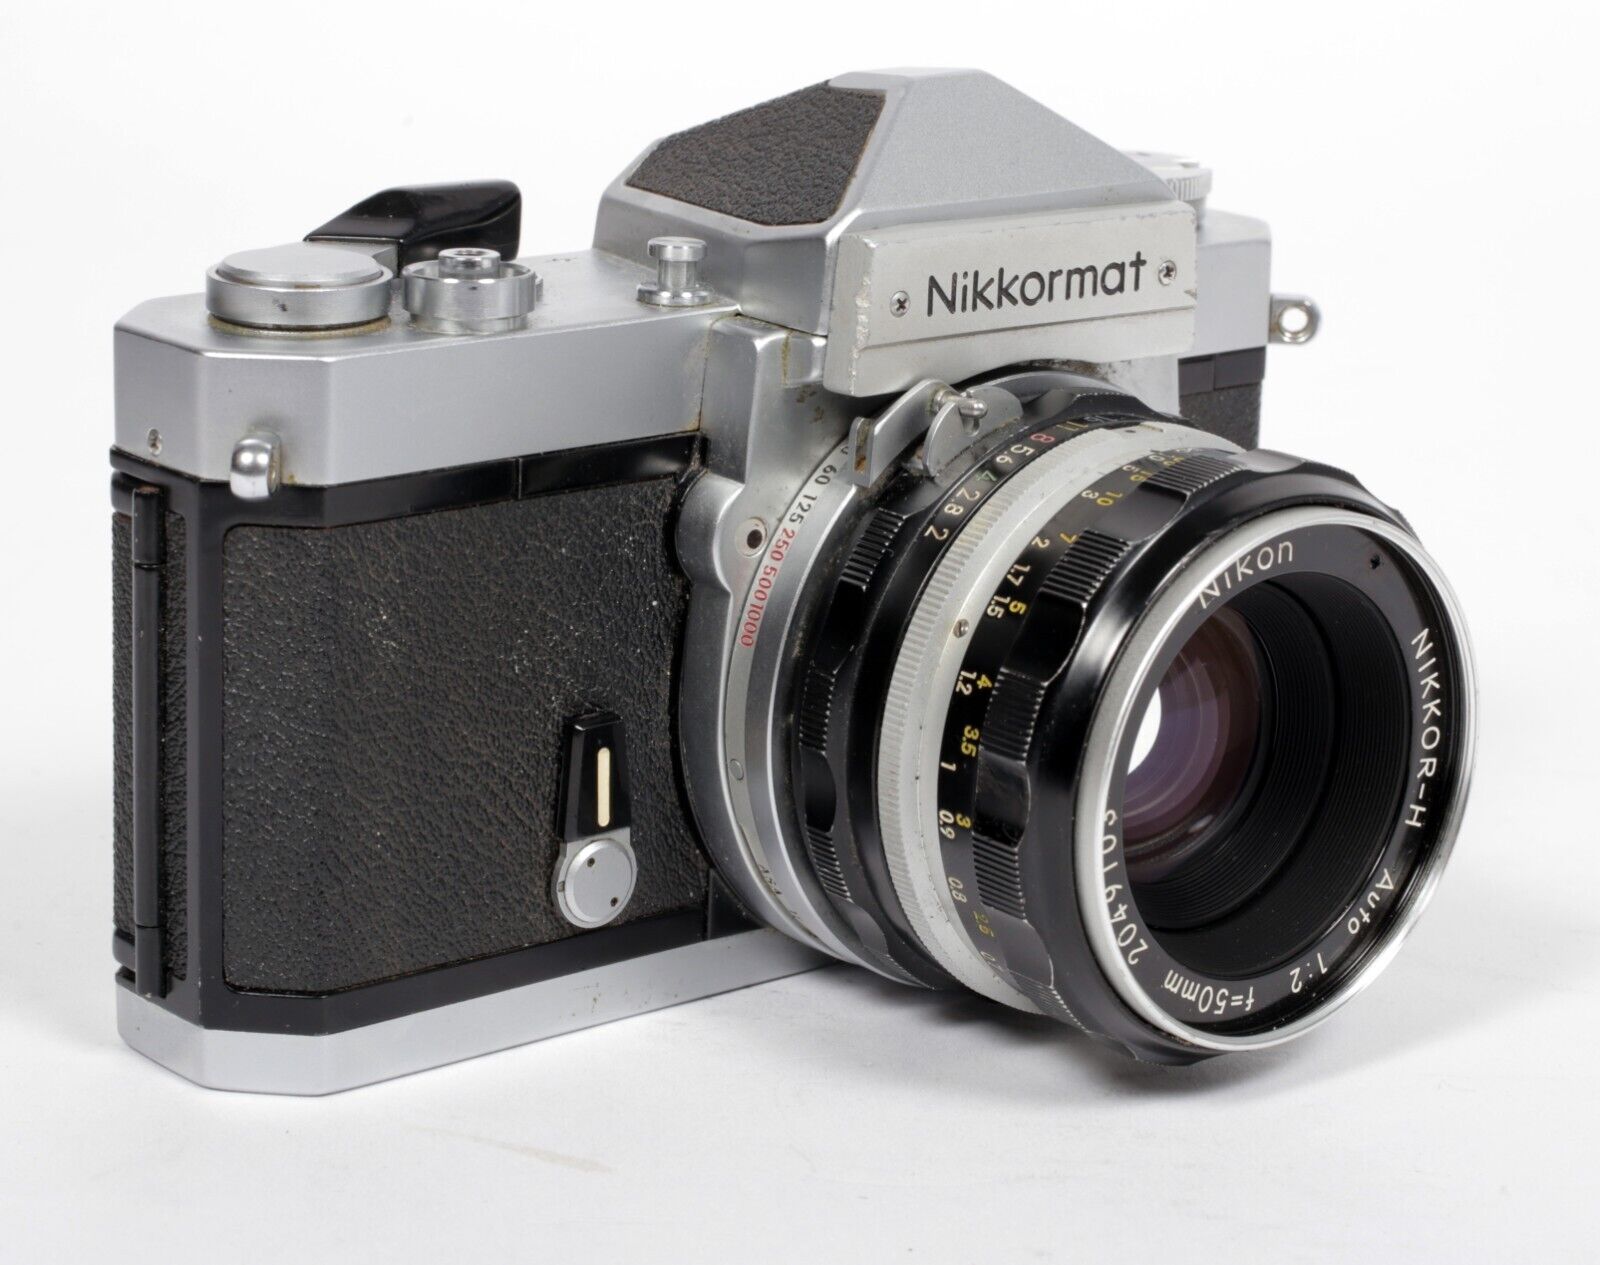 Nikon Nikkormat FTn 35mm SLR film camera with Nikkor H 50mm F12 lens #711 |  CatLABS